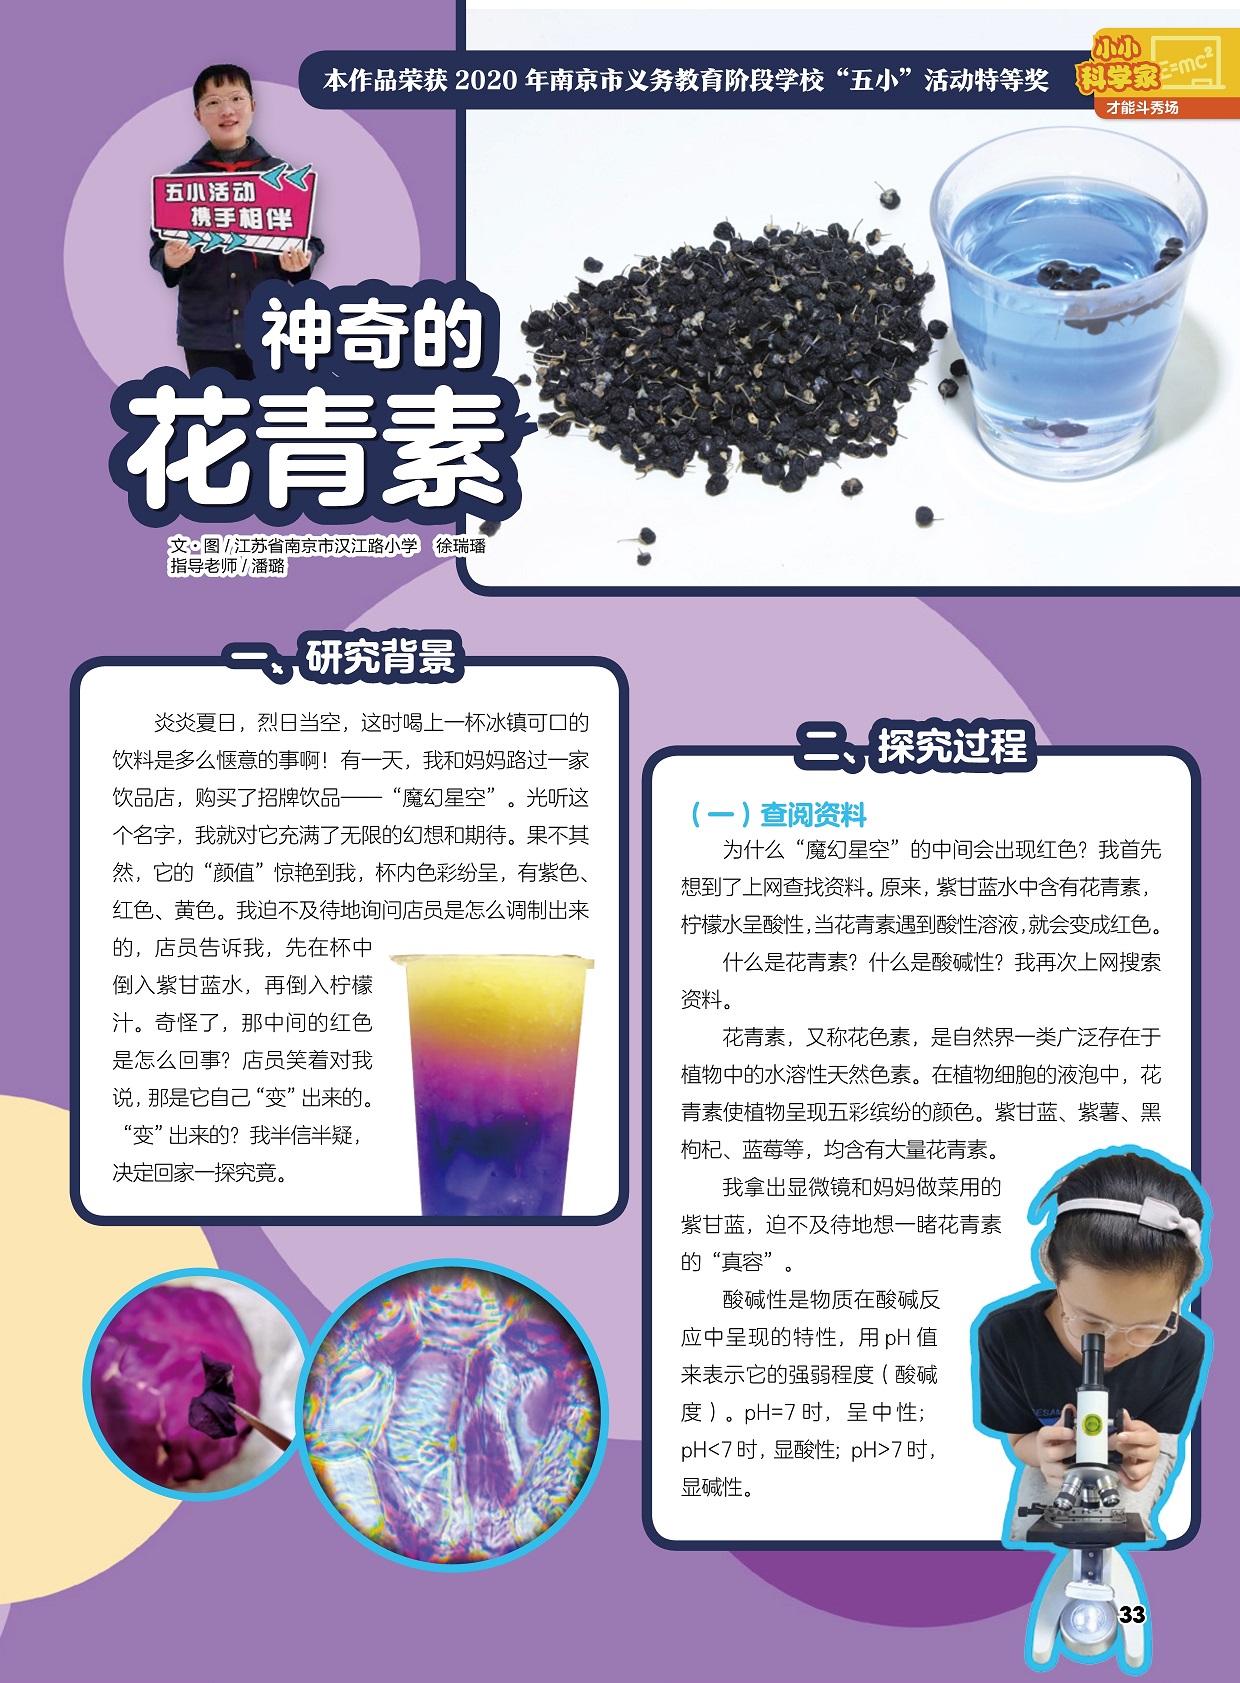 紫甘蓝水中含有花青素,花青素又称花色素